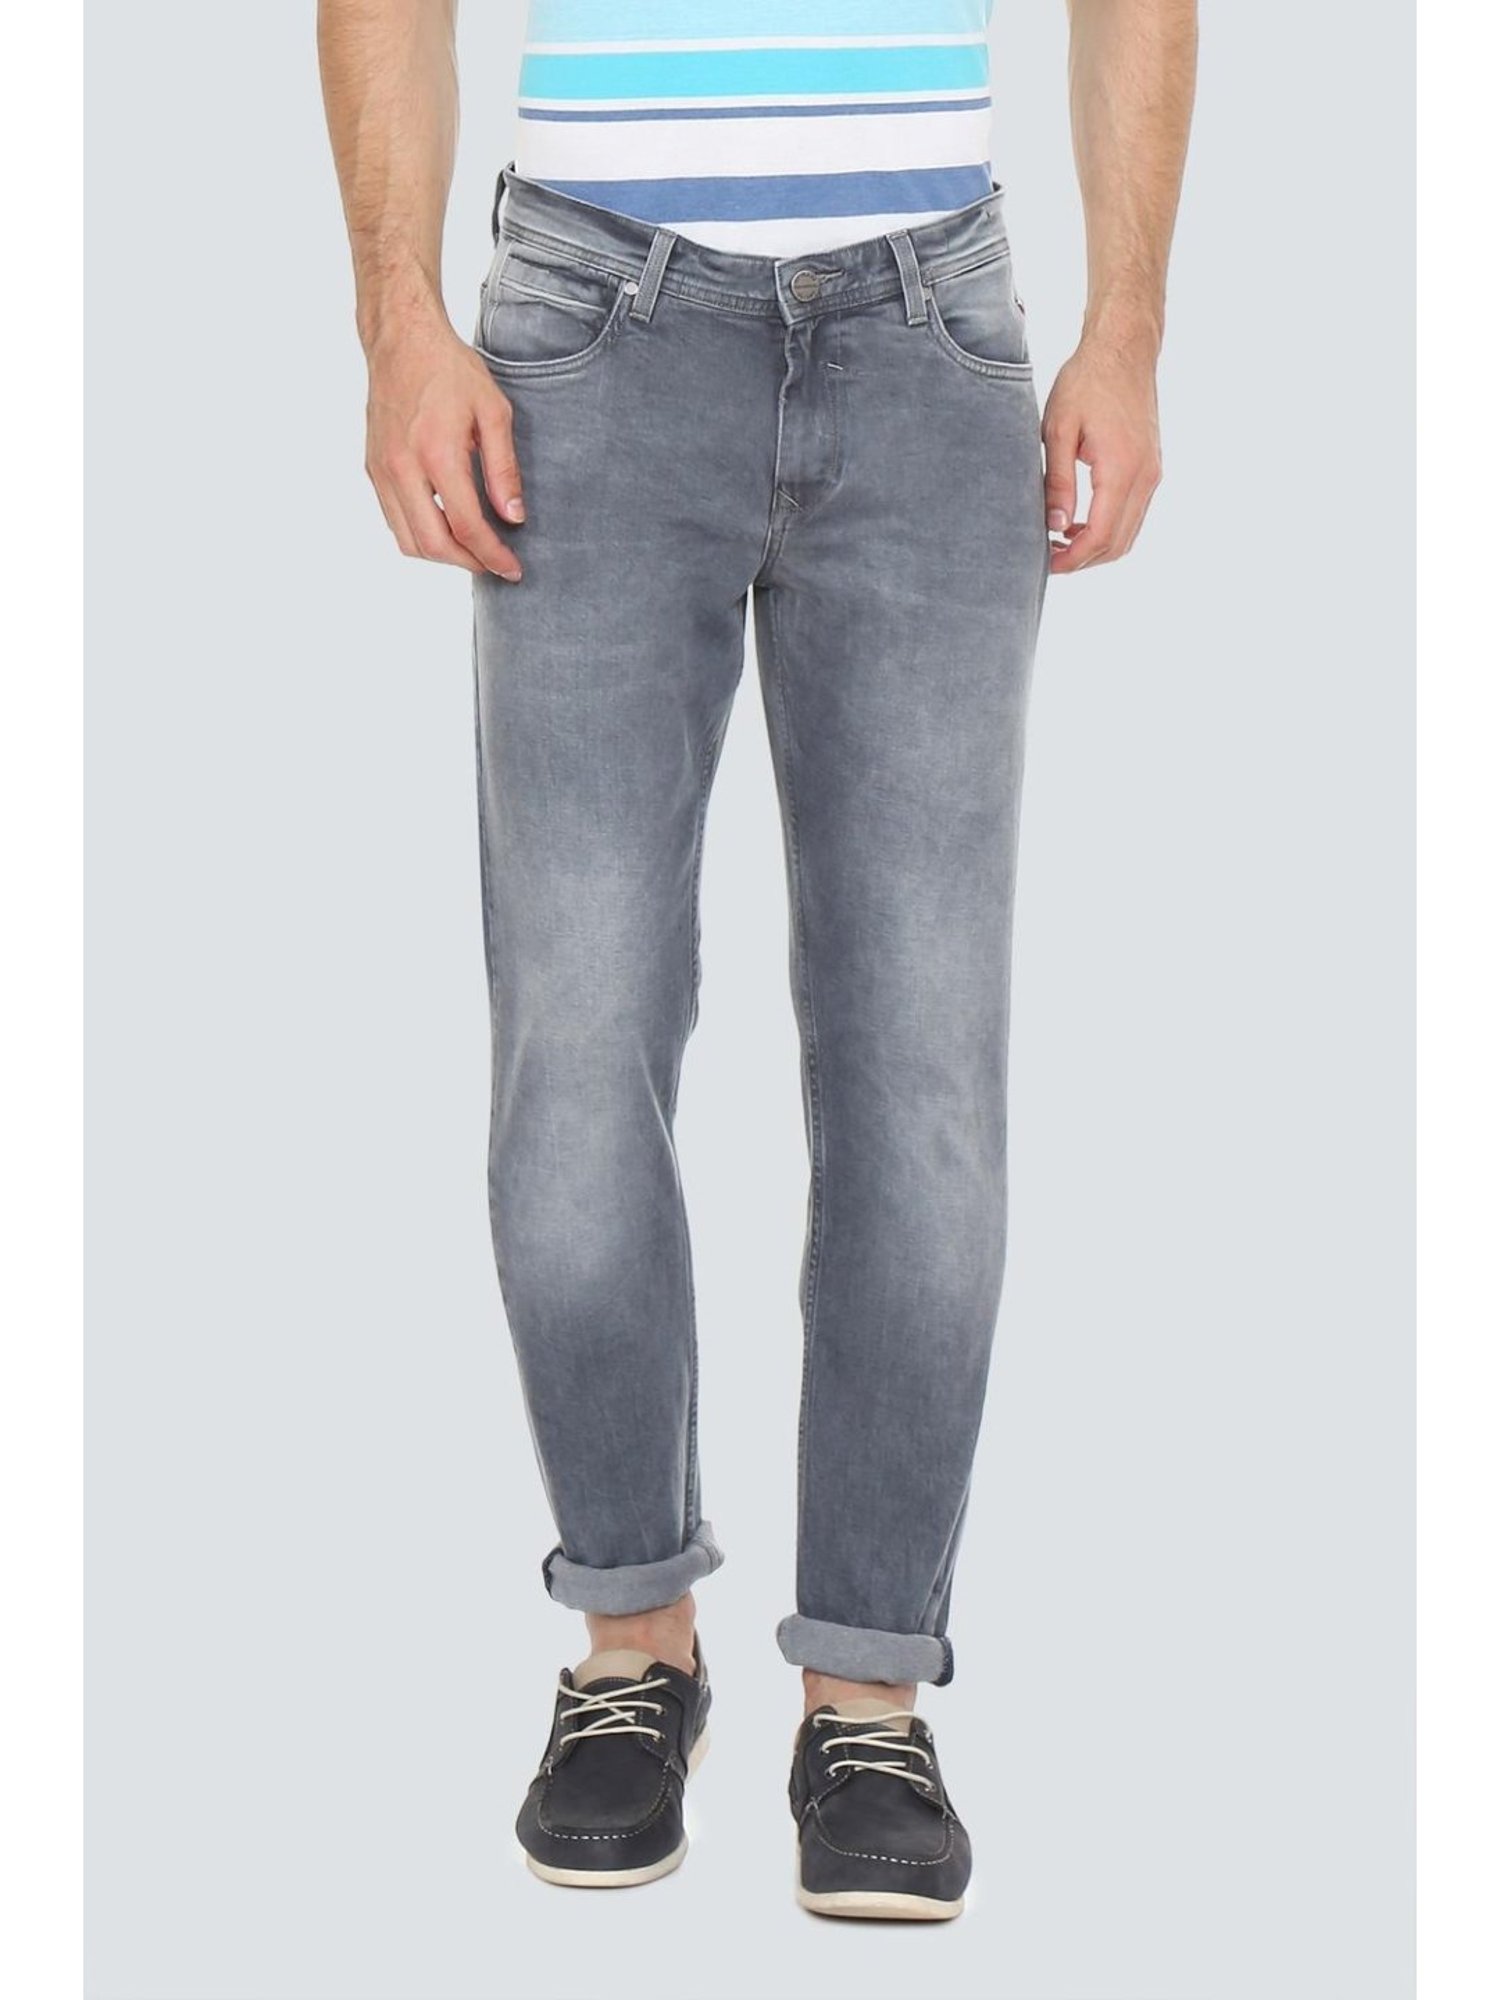 louis philippe cotton jeans